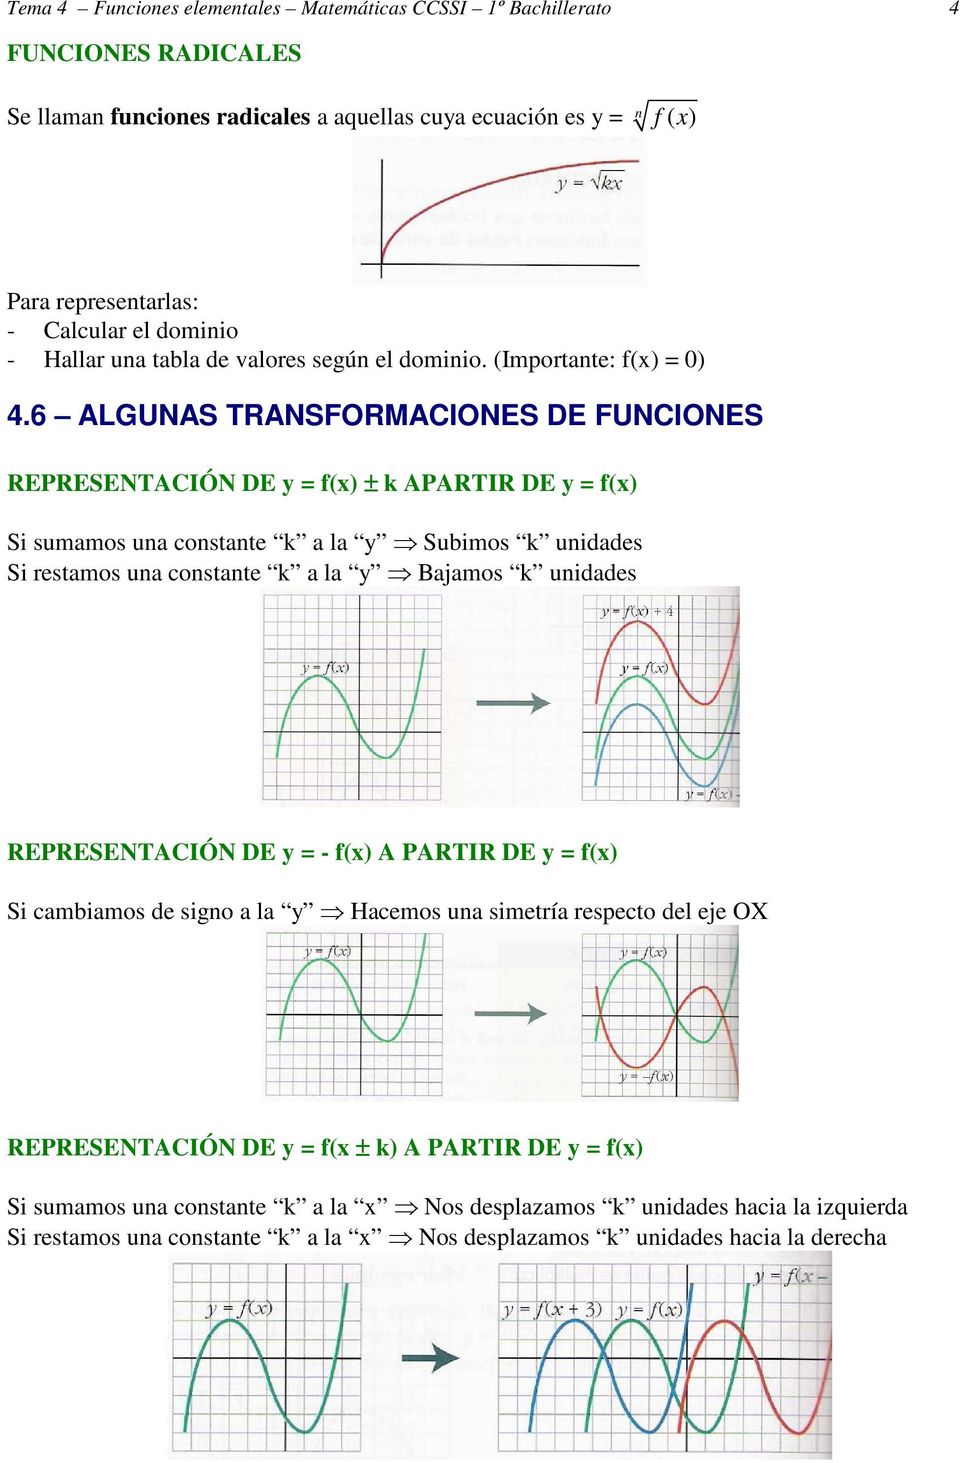 6 ALGUNAS TRANSFORMACIONES DE FUNCIONES REPRESENTACIÓN DE y = f(x) ± k APARTIR DE y = f(x) Si sumamos una constante k a la y Subimos k unidades Si restamos una constante k a la y Bajamos k unidades